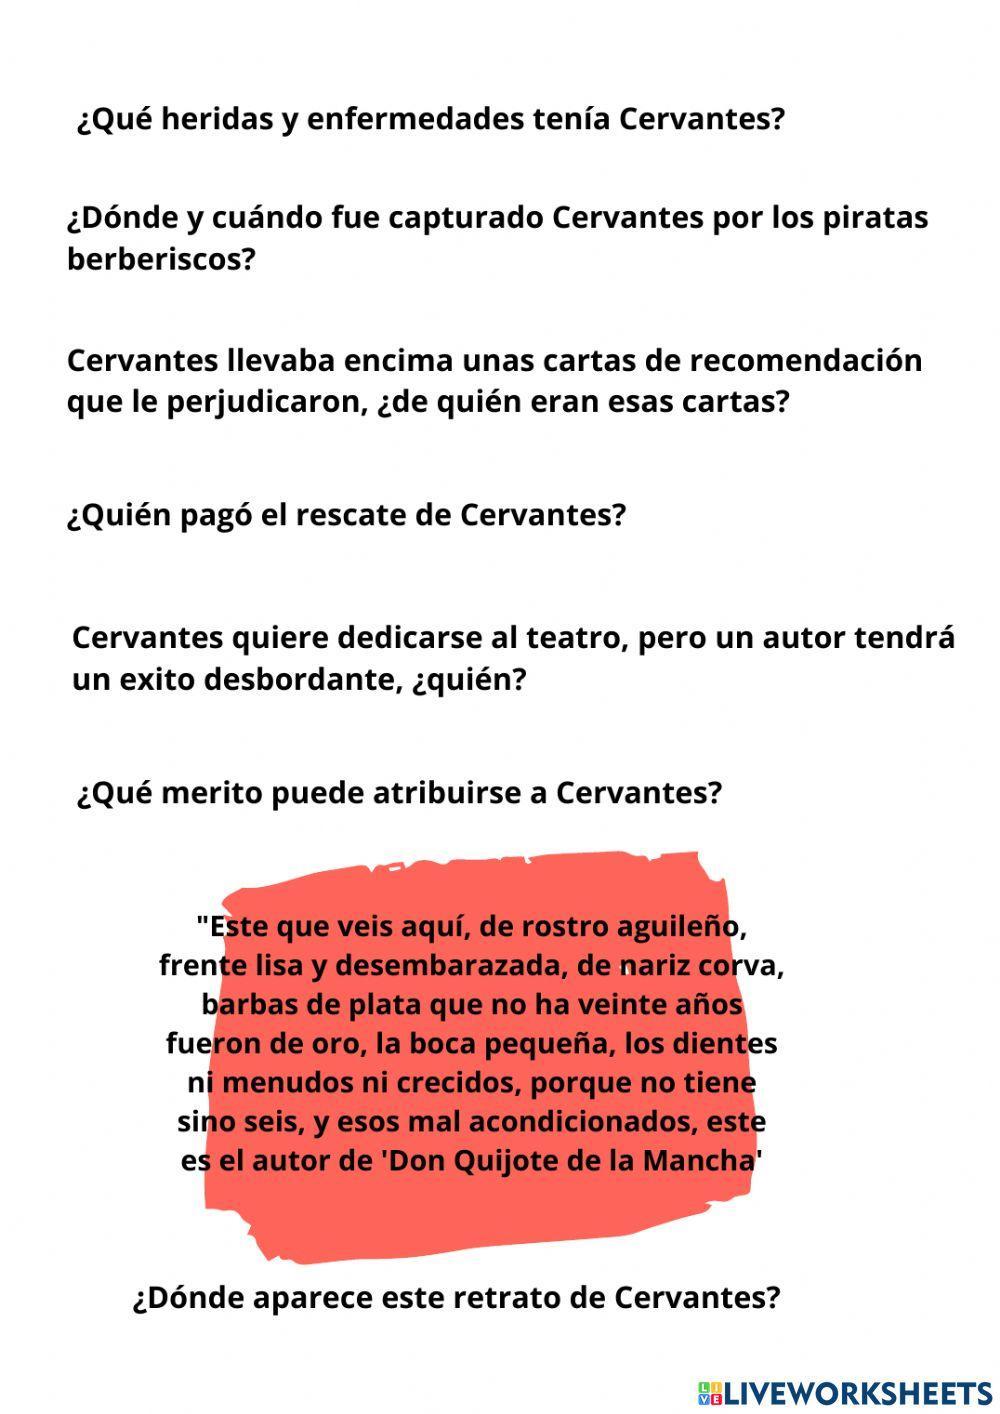 Buscando a Cervantes